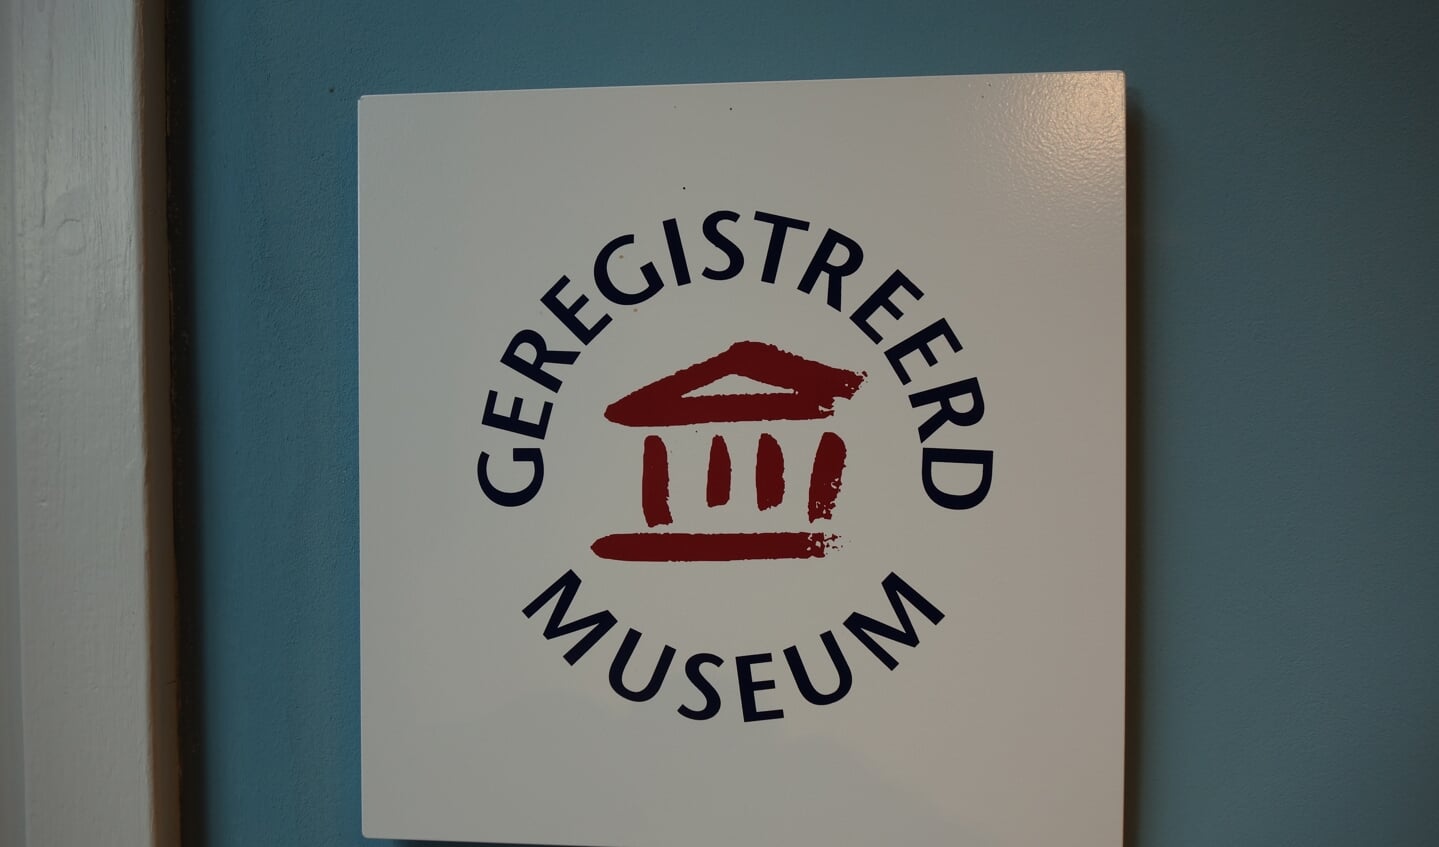  Vereniging Het Museum is als enige museum in Winterswijk geregistreerd. Foto: Clemens Bielen